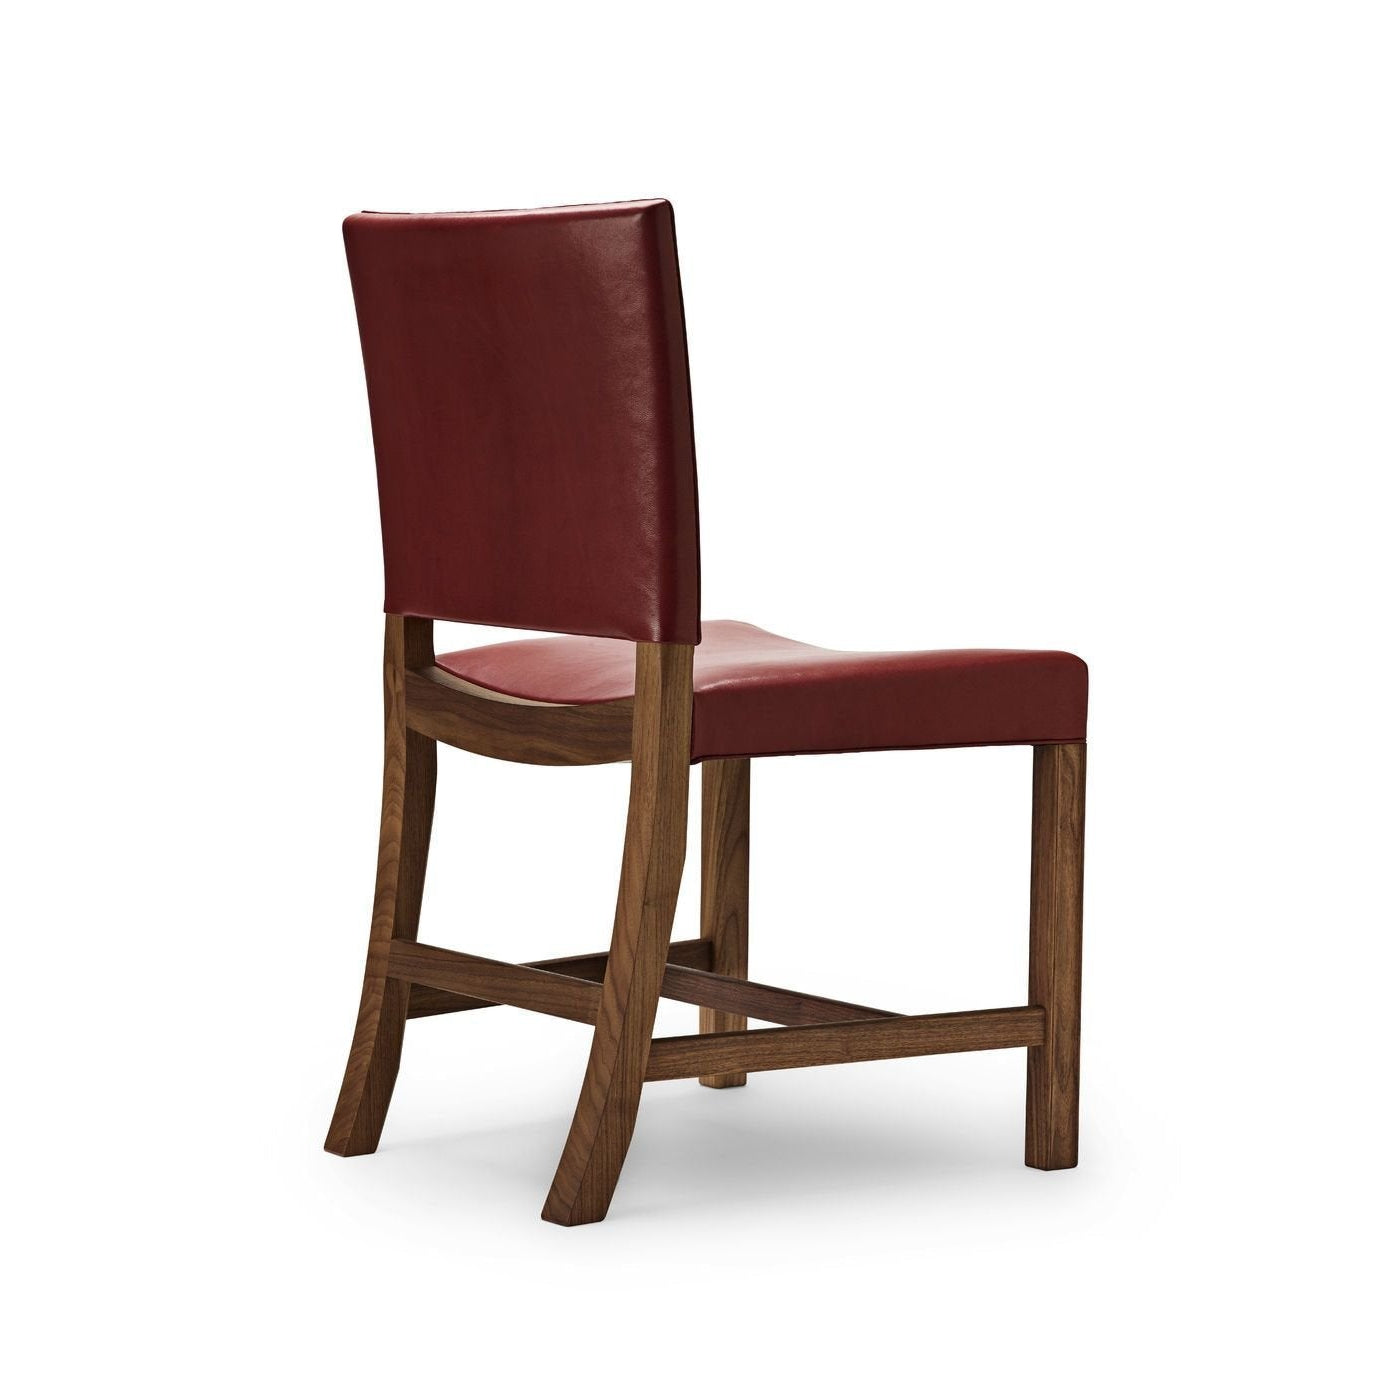 Carl Hansen KK47510 Czerwone krzesło, lakierowane orzechy włoskie/czerwone kozie